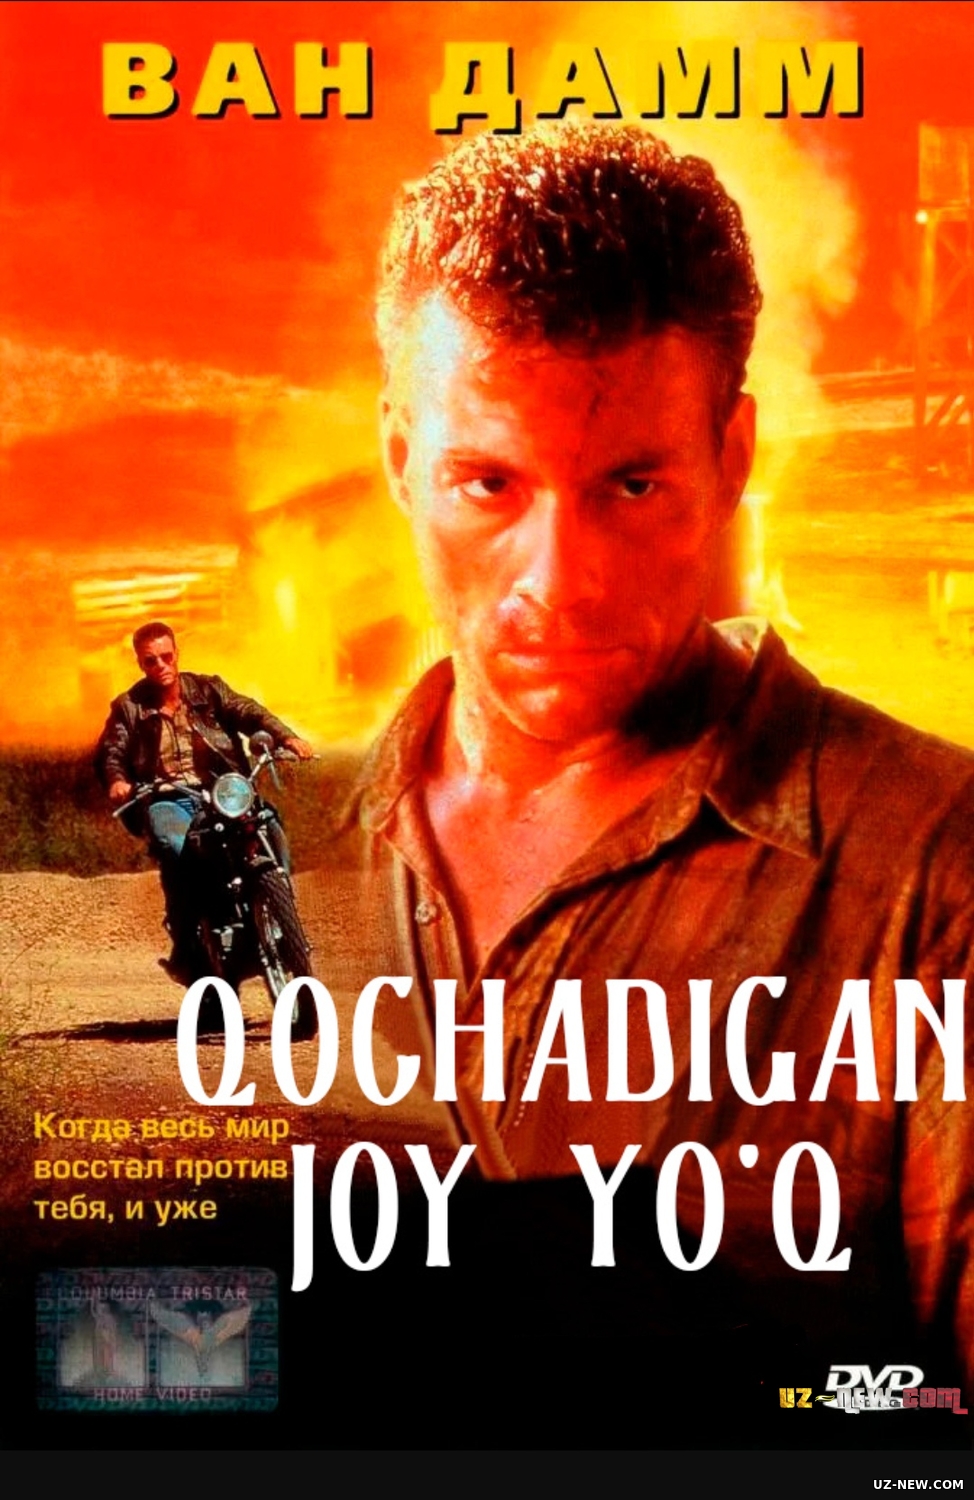 Qochadigan joy yo'q / Qochishga joy yo'q Van Dam ishtirokidagi film Uzbek tilida 1993